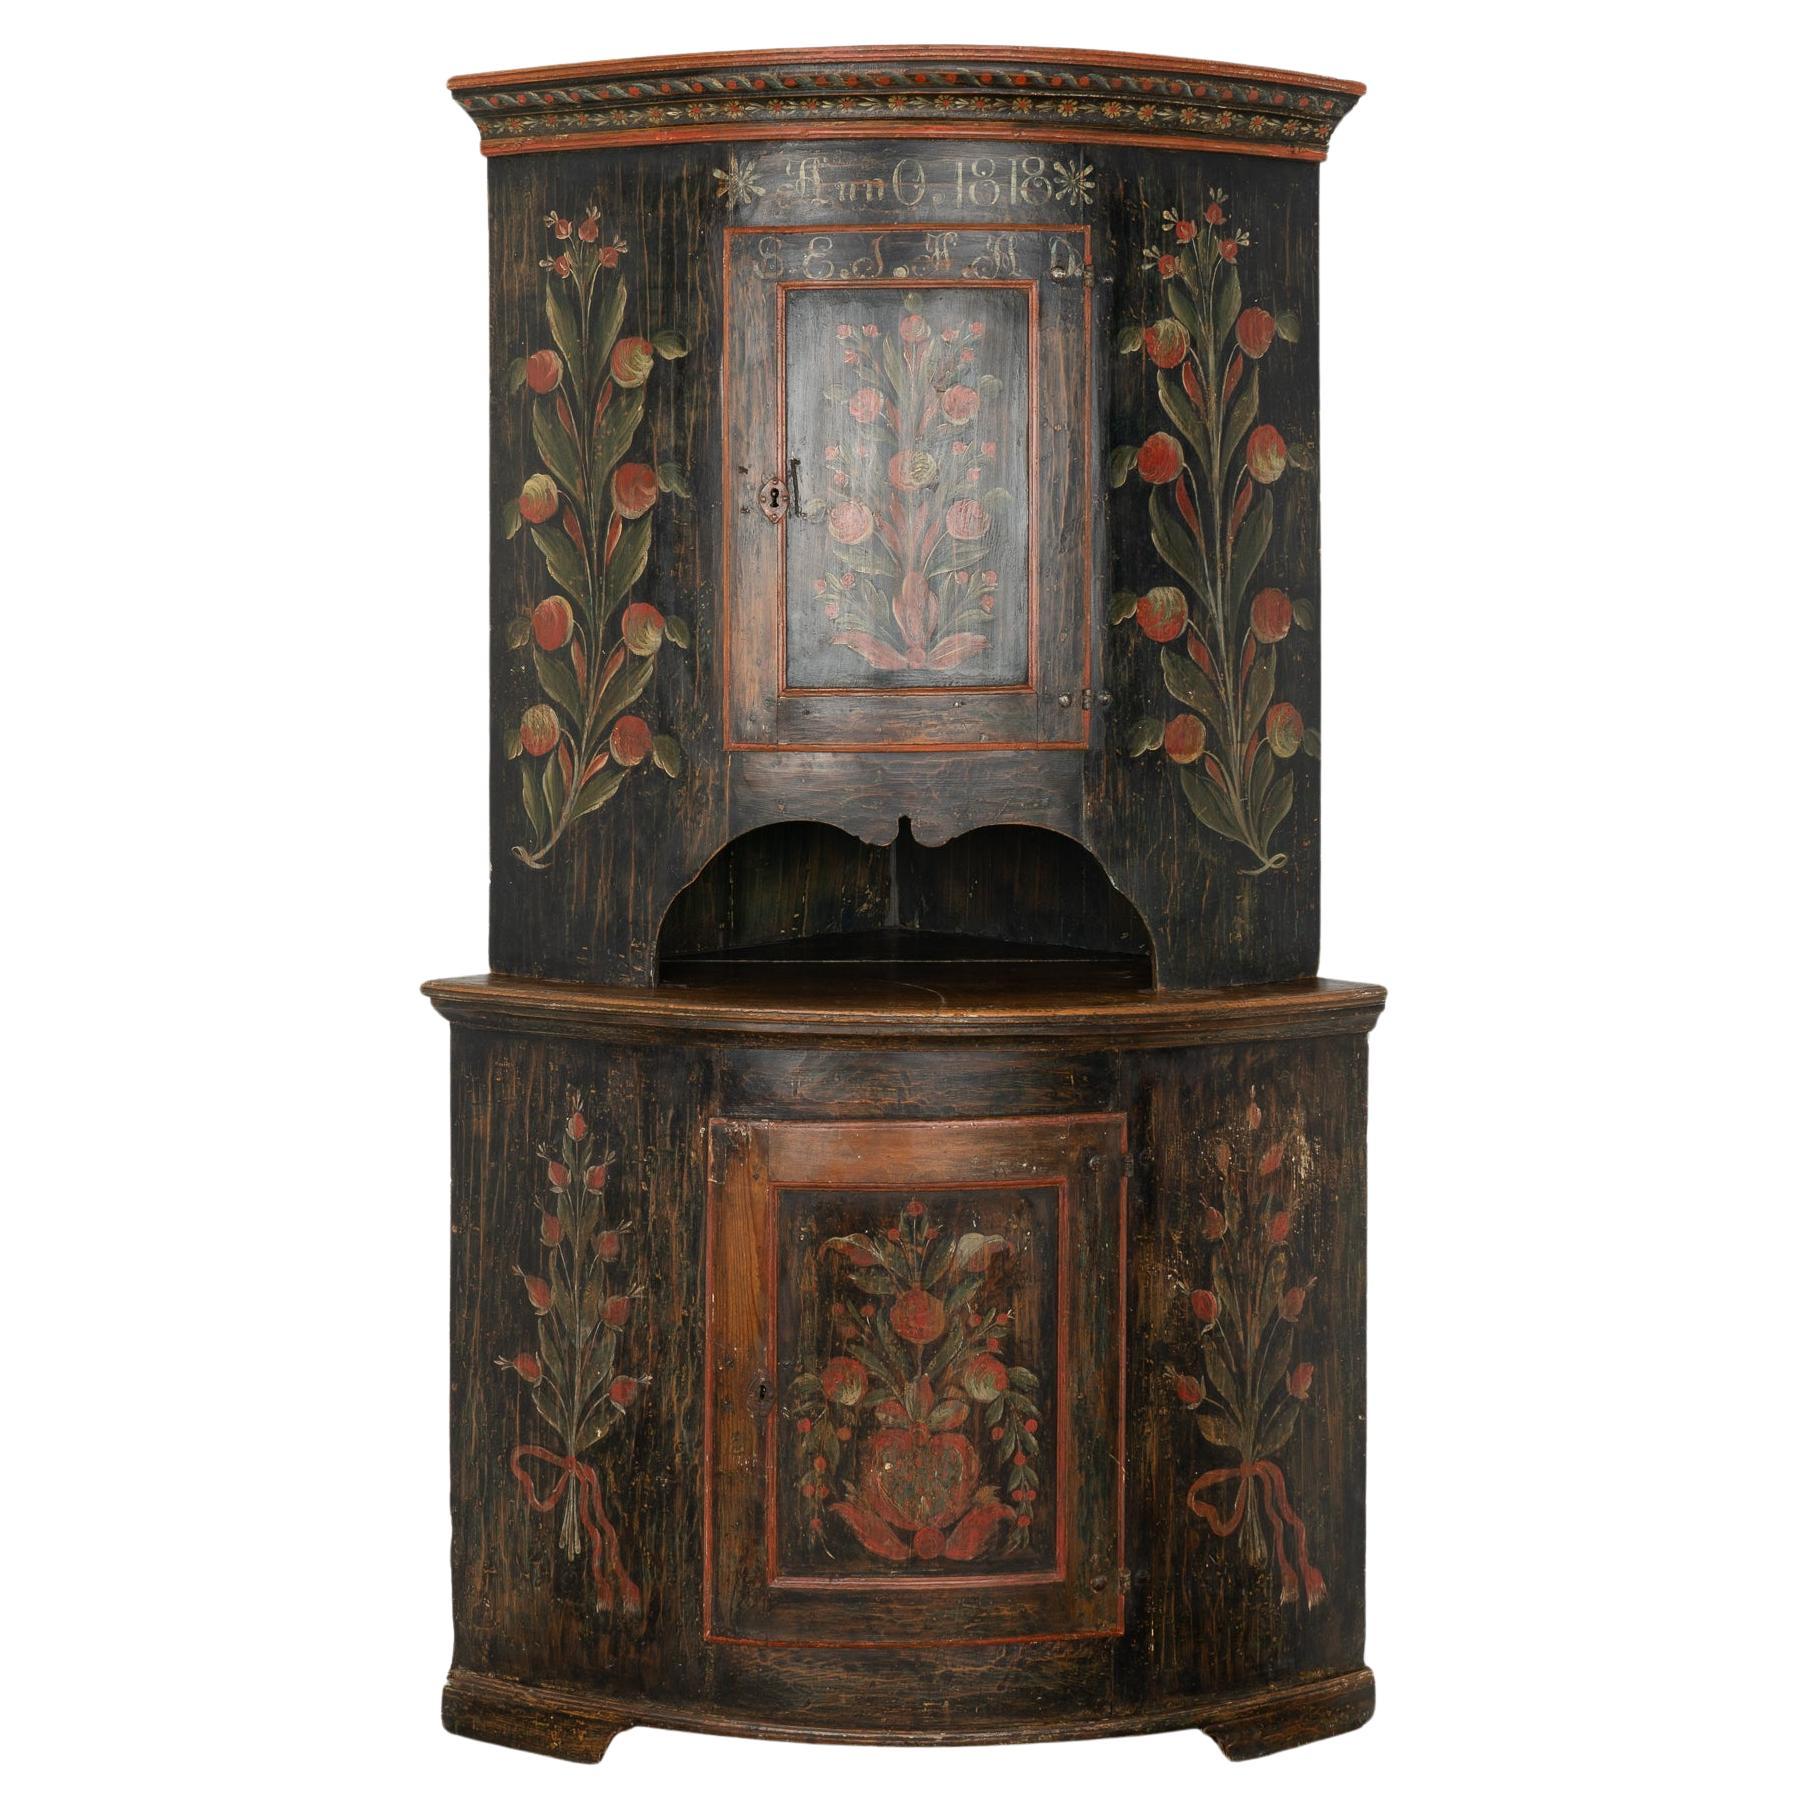 Original Black Painted Corner Cupboard Cabinet, Sweden dated 1818 For Sale